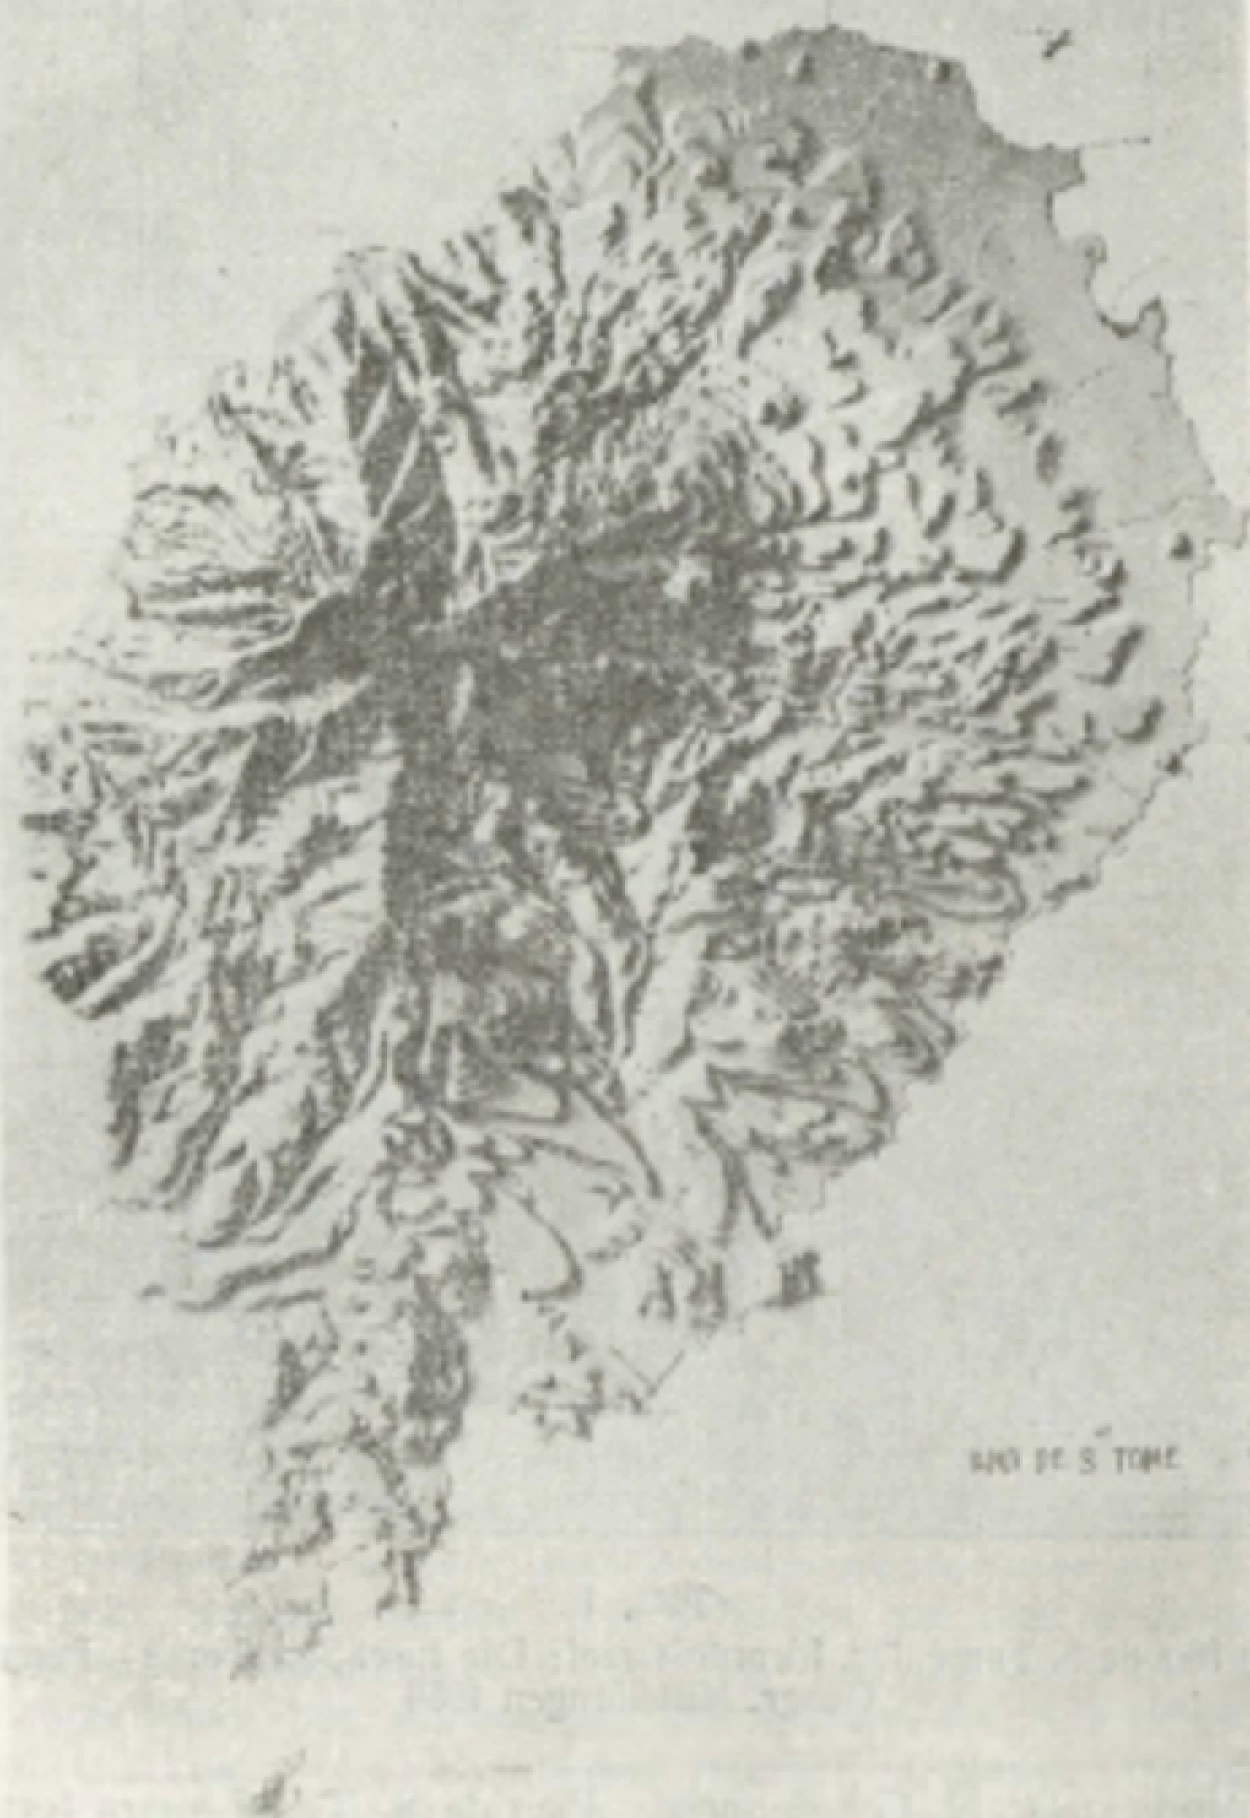 Fig. 1 – Fotografia do modelo da Ilha de S. Tomé, executado pelo Museu Mineralógico e Geológico da Universidade de Coimbra (in “Revista Terra”, nº14, p. 40, 1934)